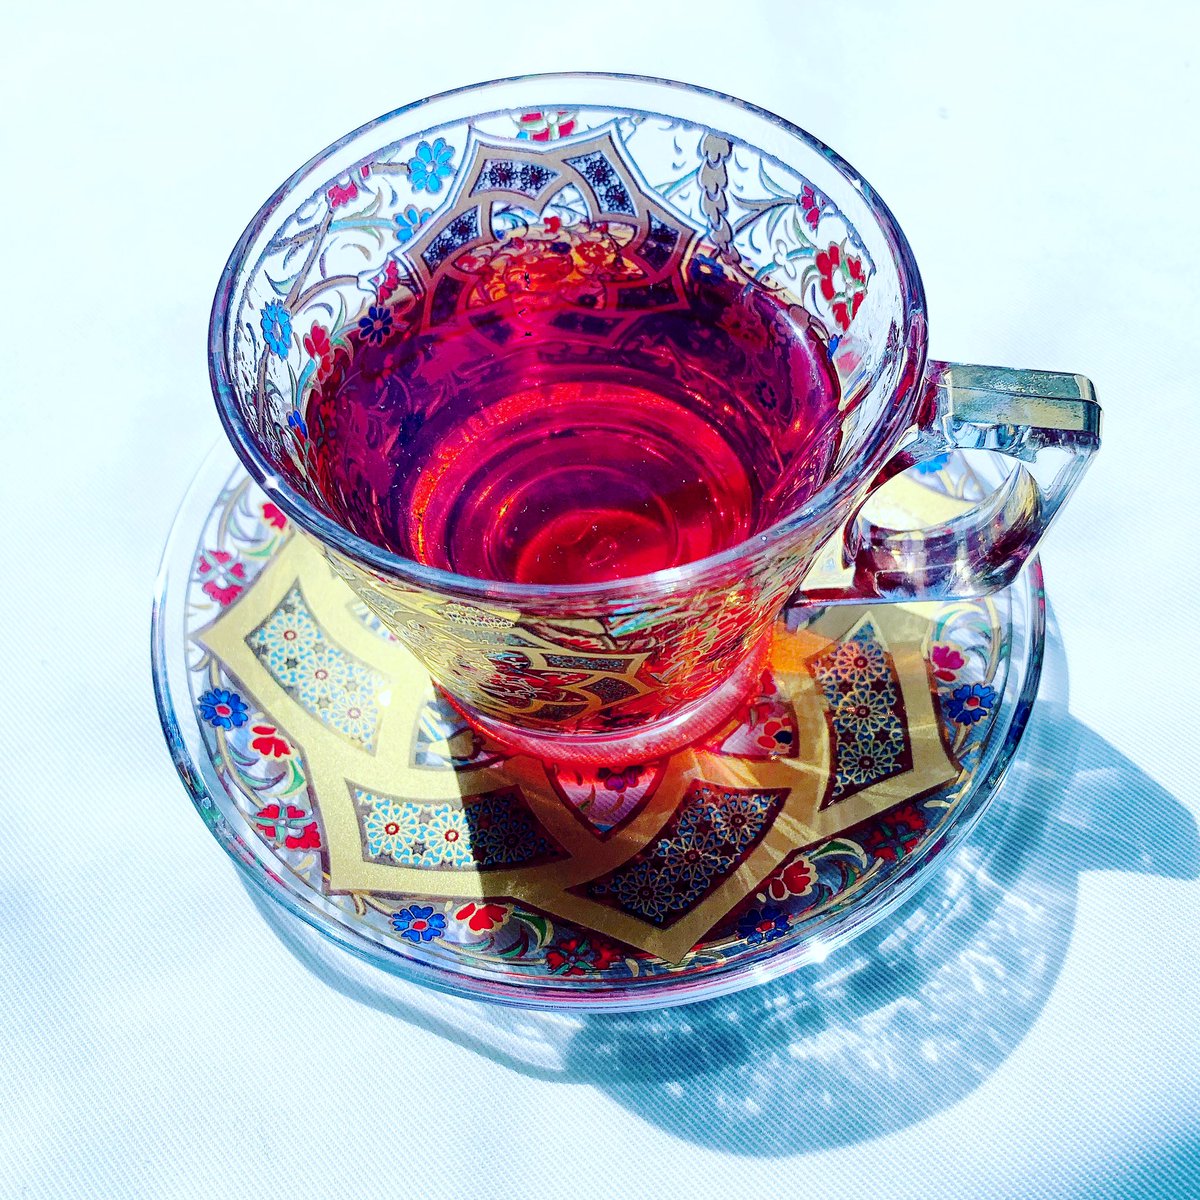 ট ইট র 𝘠𝘢𝘴 赤い紅茶をトルコグラスに注いだらとても綺麗だった